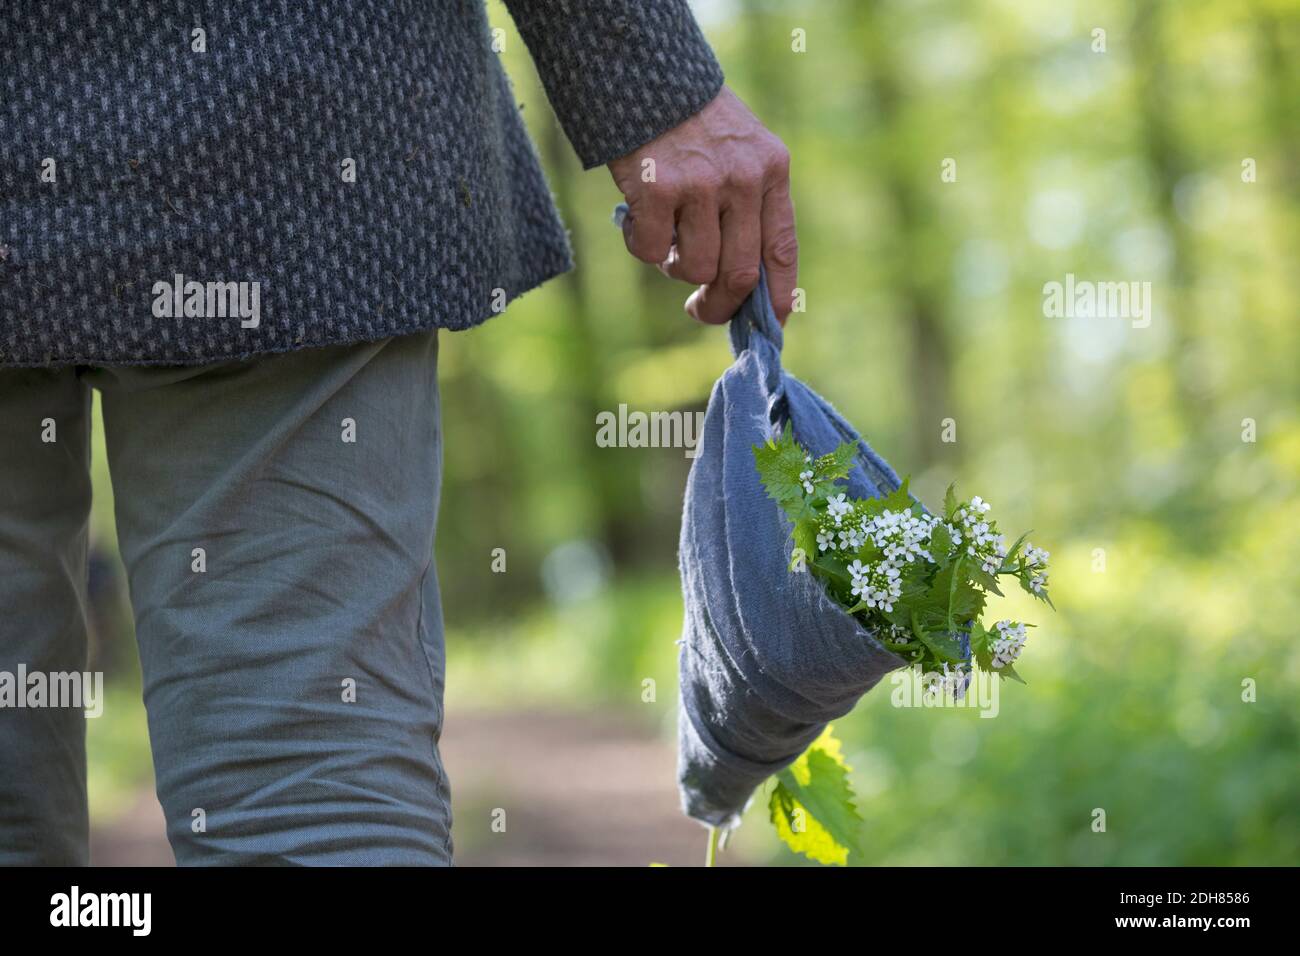 Senape all'aglio, aglio all'orlo, Jack-by-the-Hedge (Alliaria petiolata), Donna che tiene una sciarpa con razzo all'aglio raccolto, Germania Foto Stock